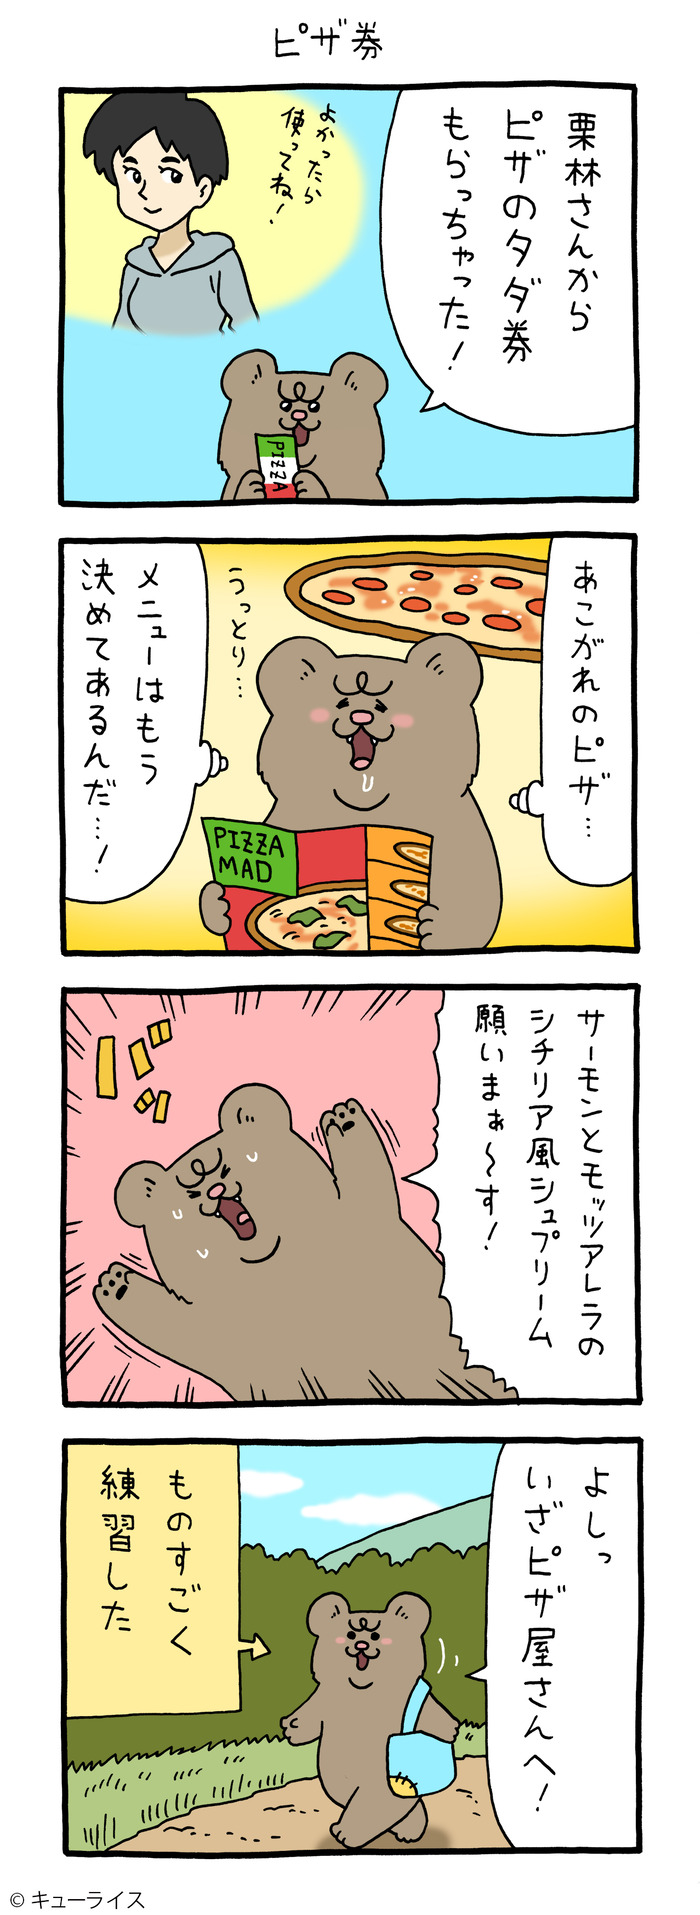 悲熊とピザ1 のコピー